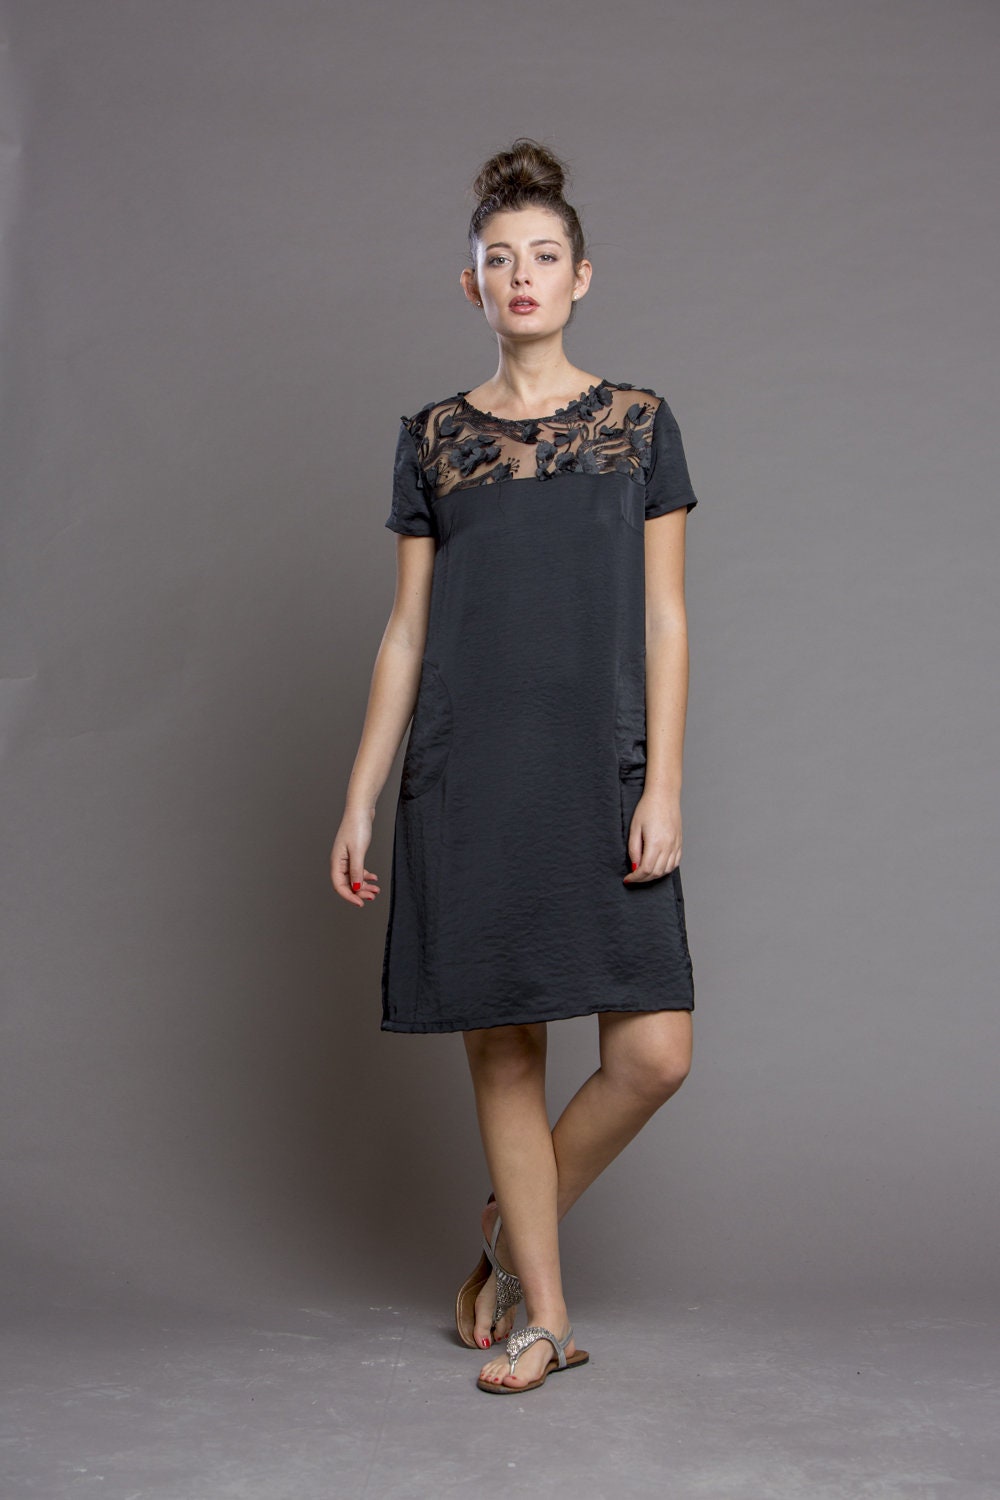 Little Black Dress Womens Evening Dress Cocktail Dress | Etsy